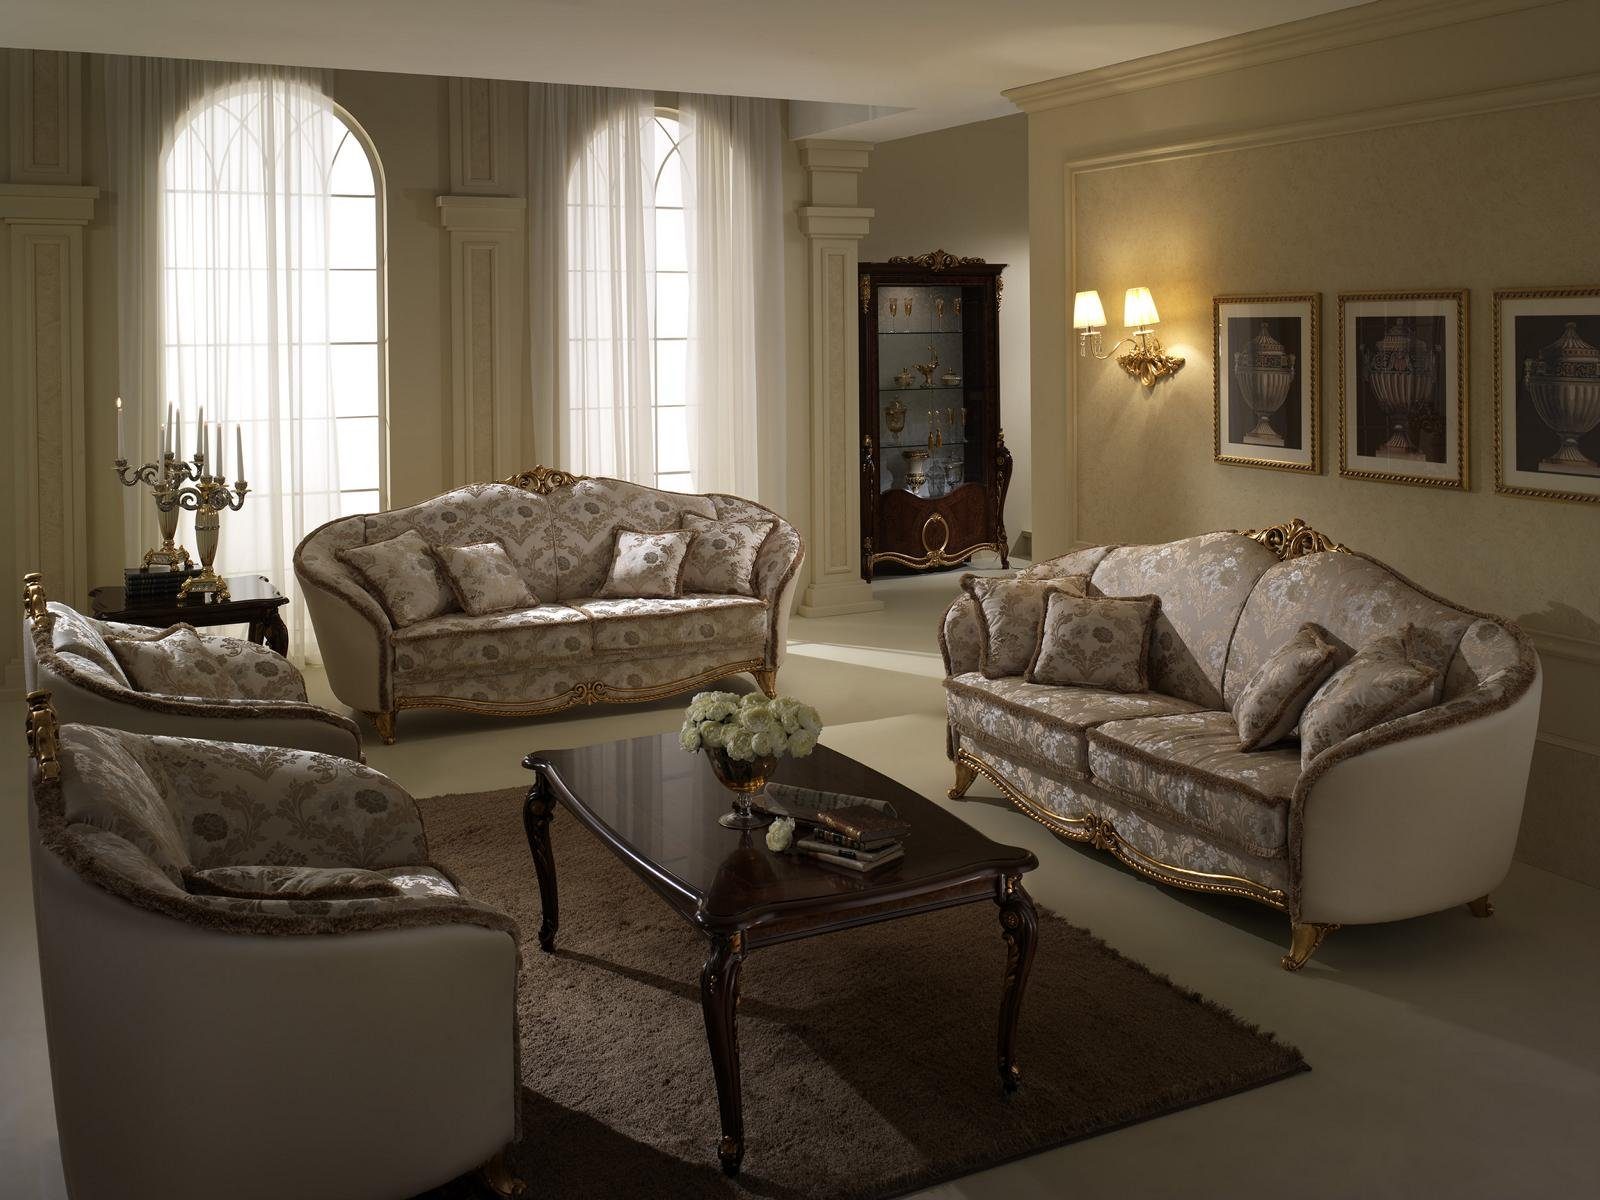 JVmoebel Wohnzimmer-Set, Luxus Klasse 3+2 Italienische Möbel Sofagarnitur Couch Sofa arredoclassic™ Neu | Wohnwände